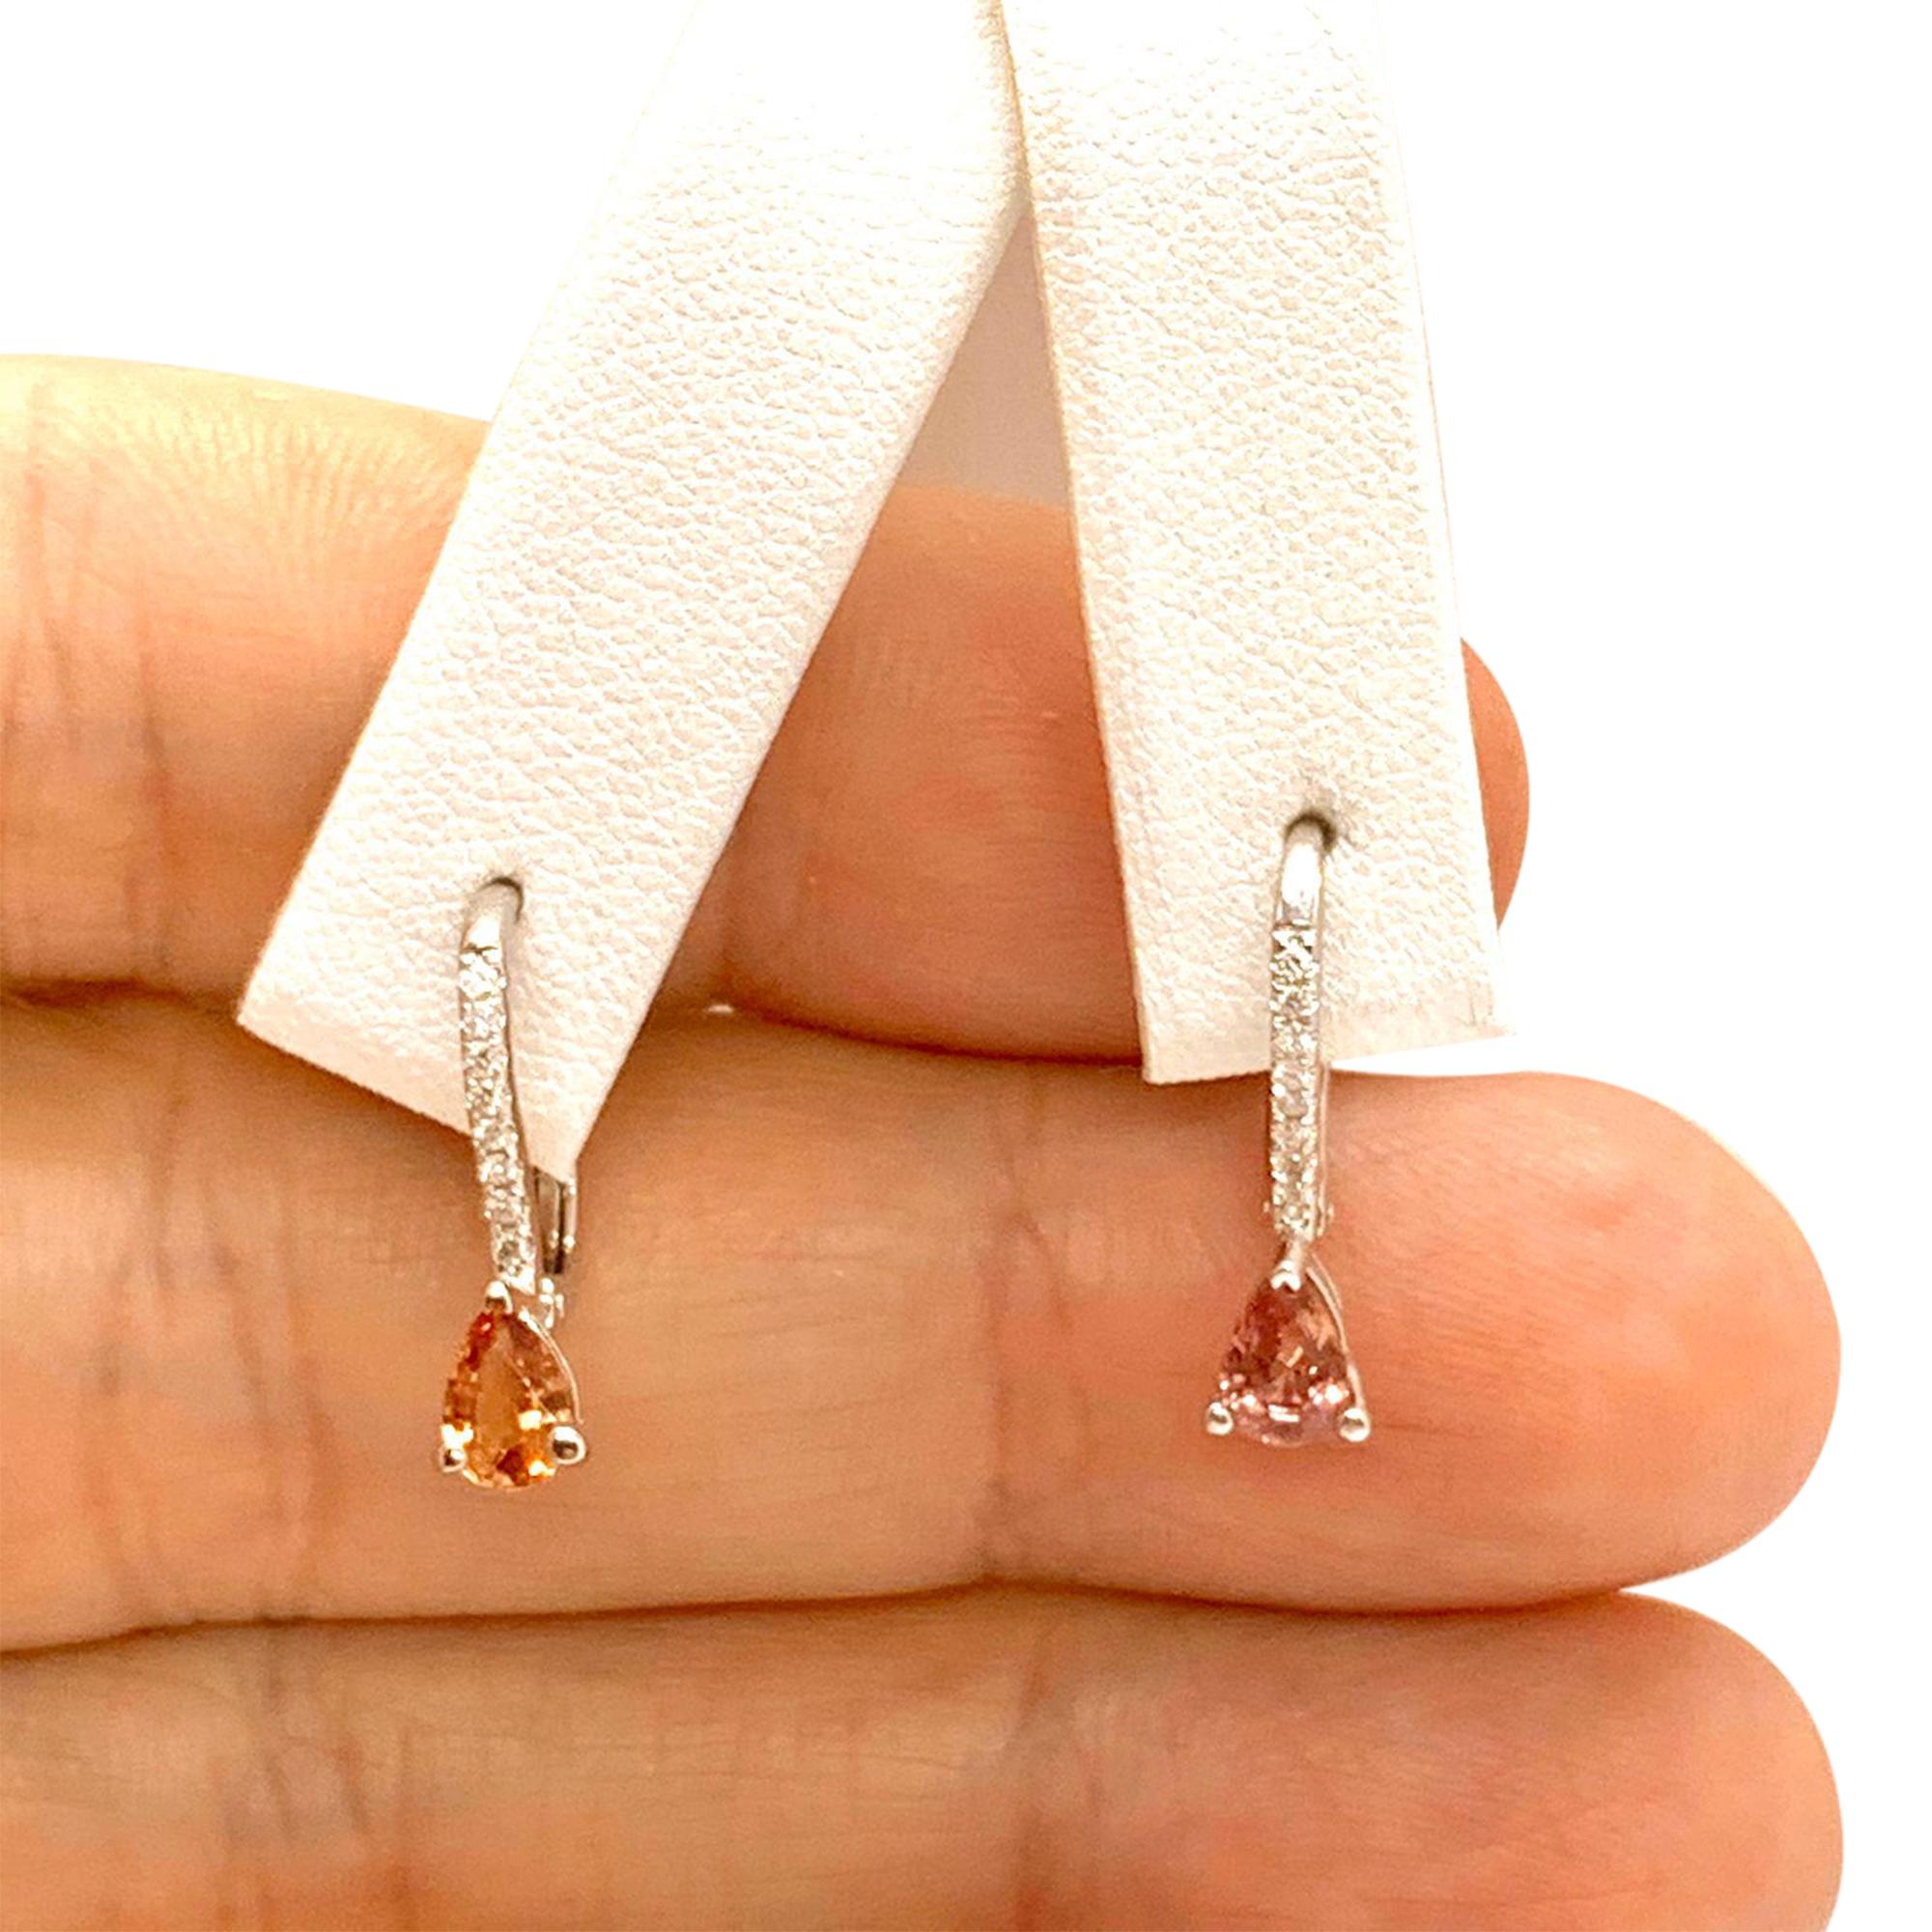 Pear Cut Diamond Sapphire Stud Earrings 18k White Gold 0.95 TCW Certified